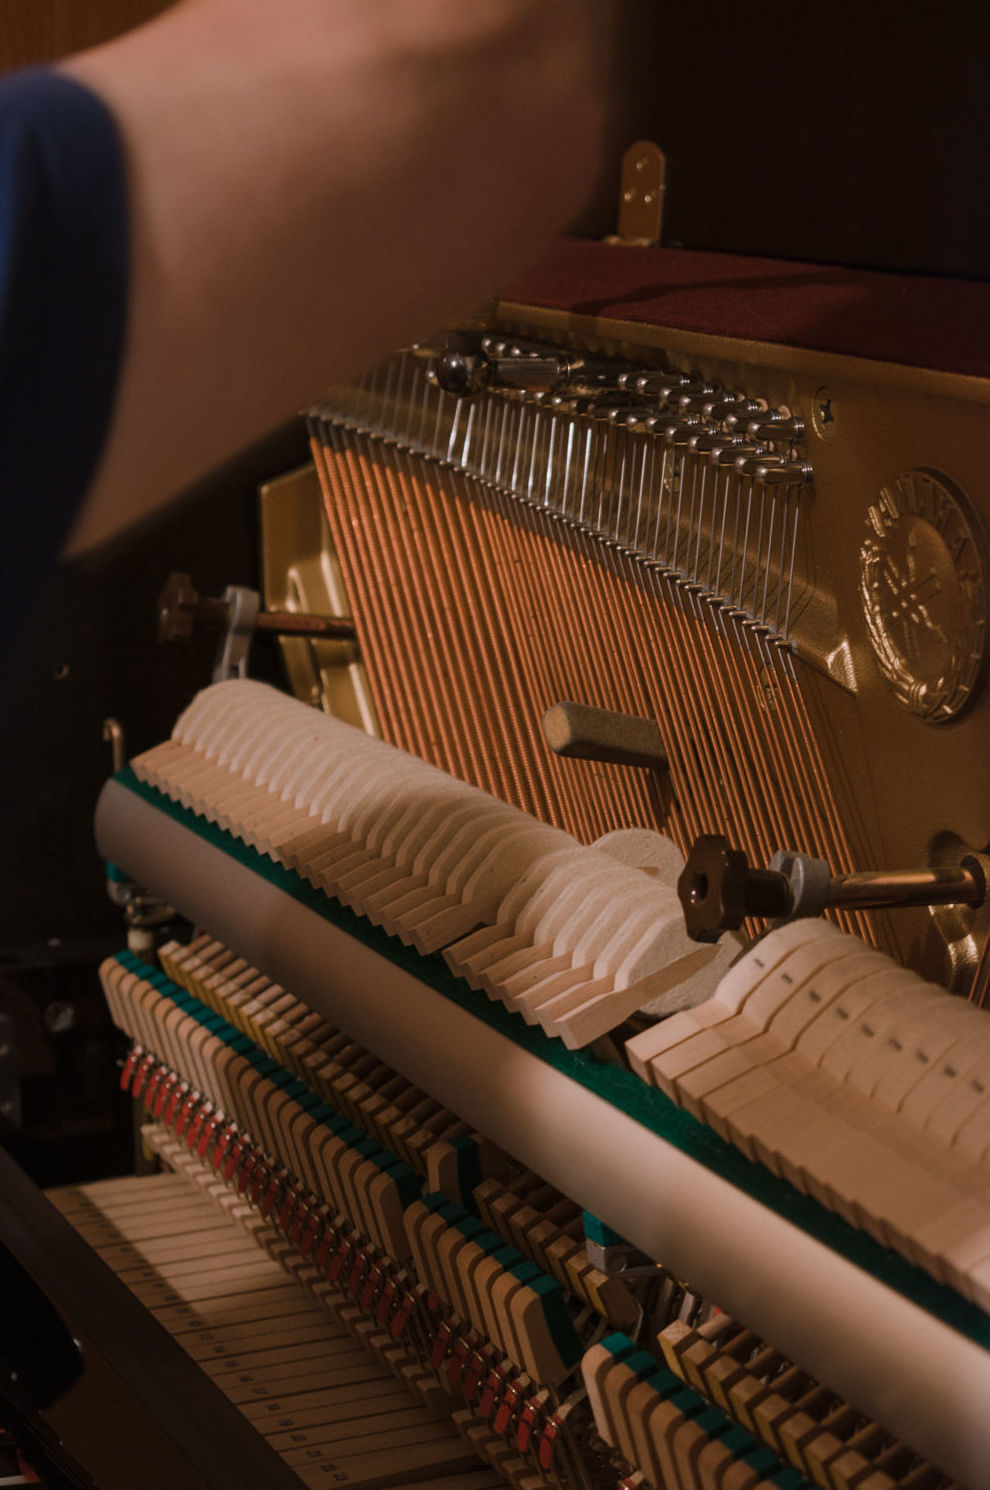 Foto 4 de Instrumentos de música en Terrassa | Afinador de Pianos E. Ferrer